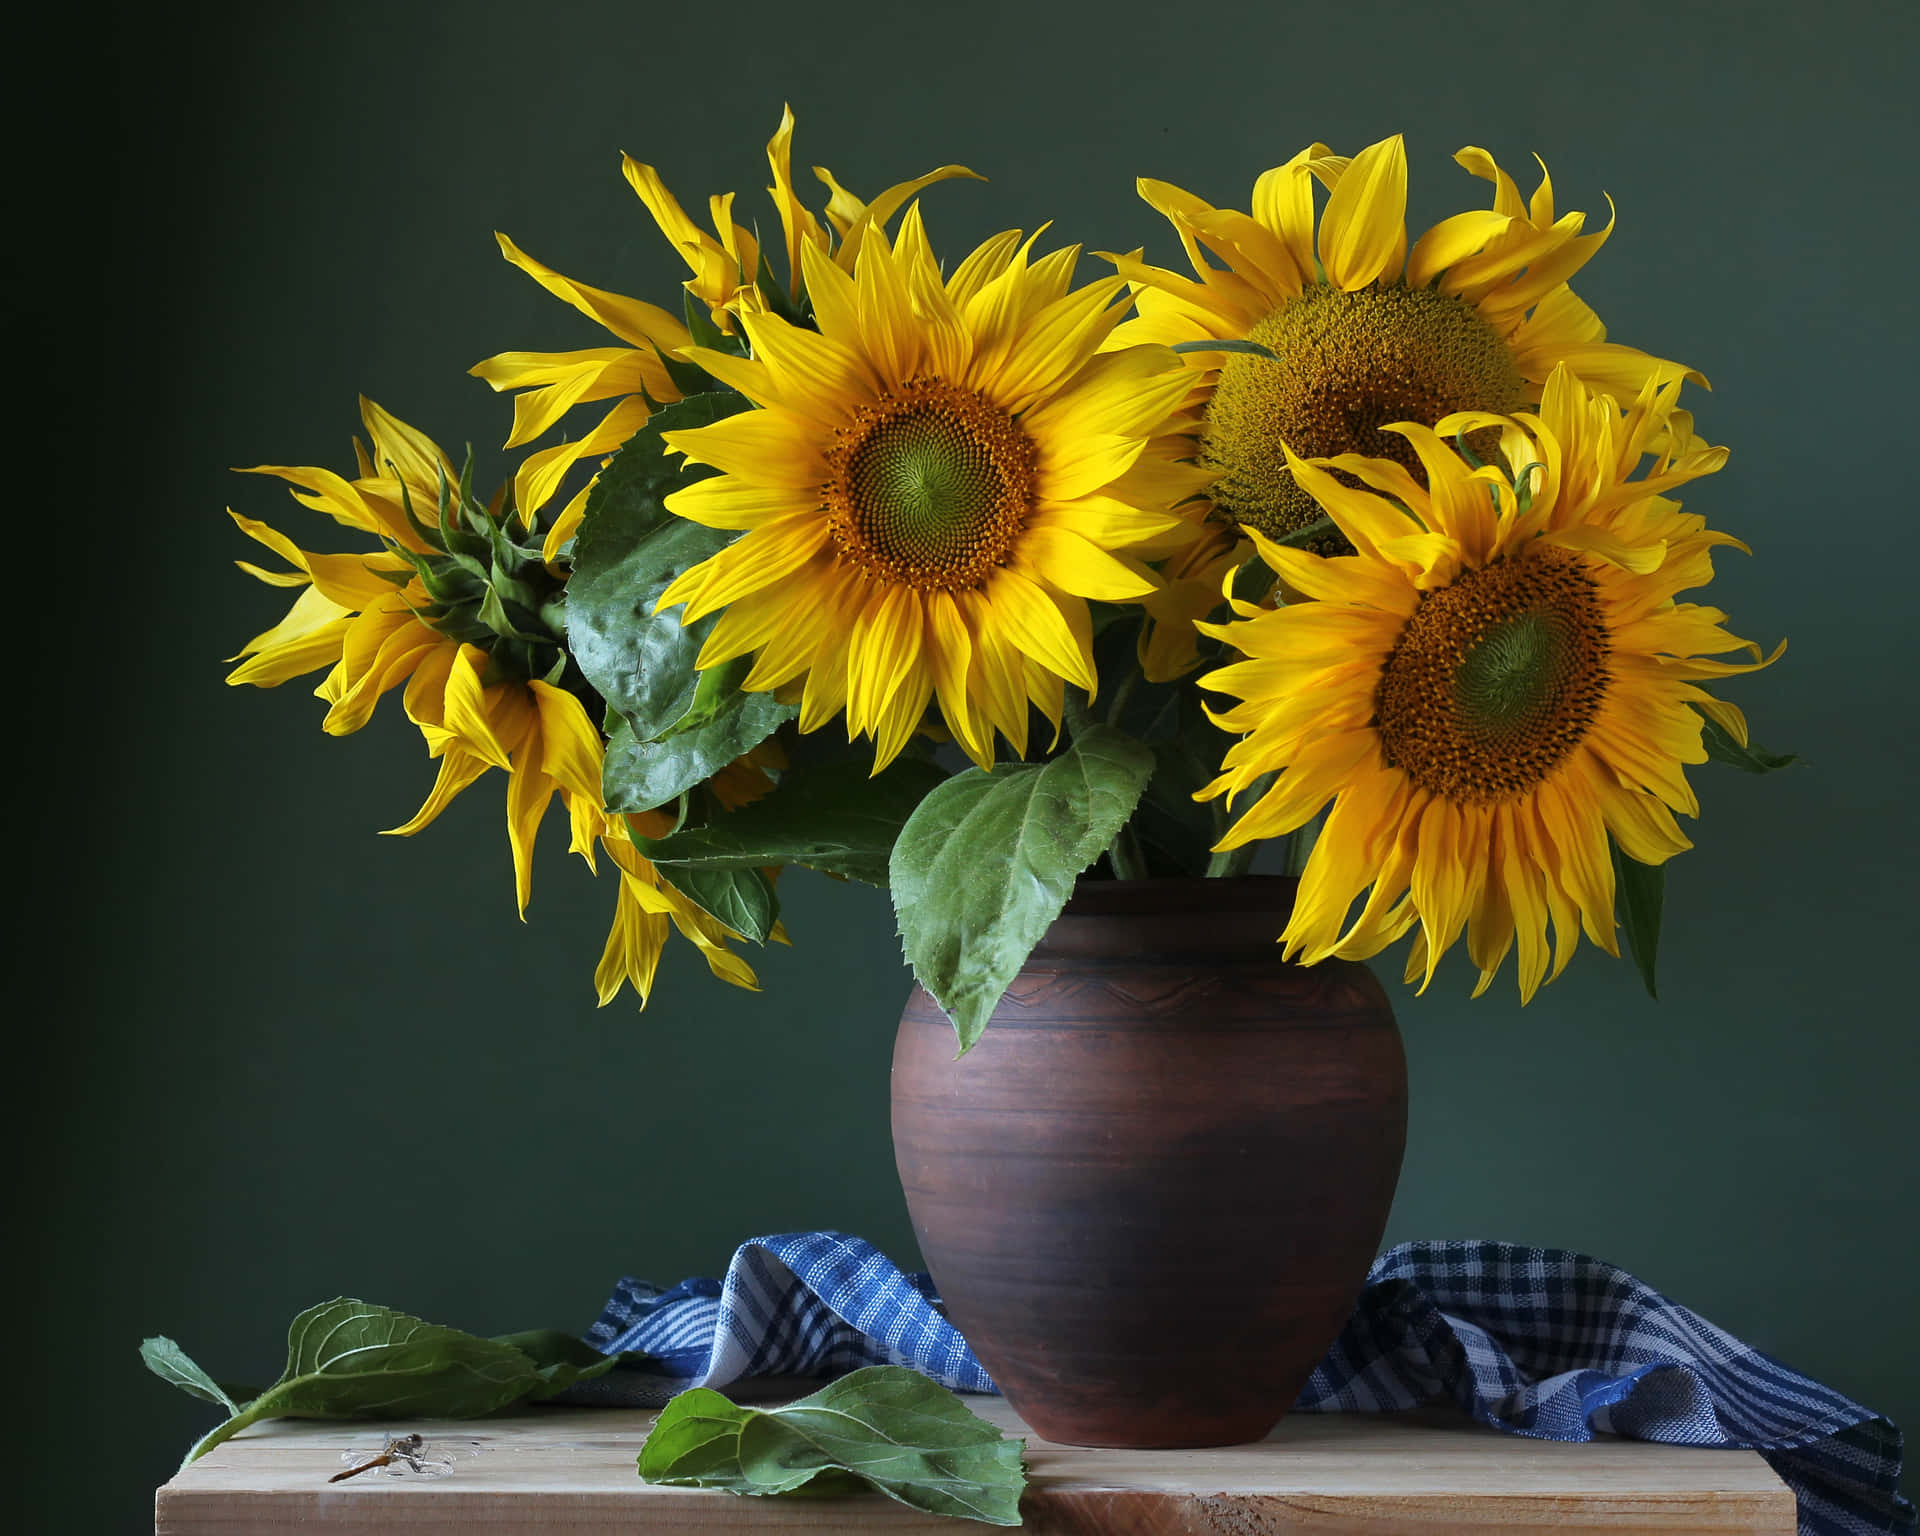 Eineleuchtende Und Lebendige Sonnenblume Sticht Gegen Einen Gelben Himmel Heraus.